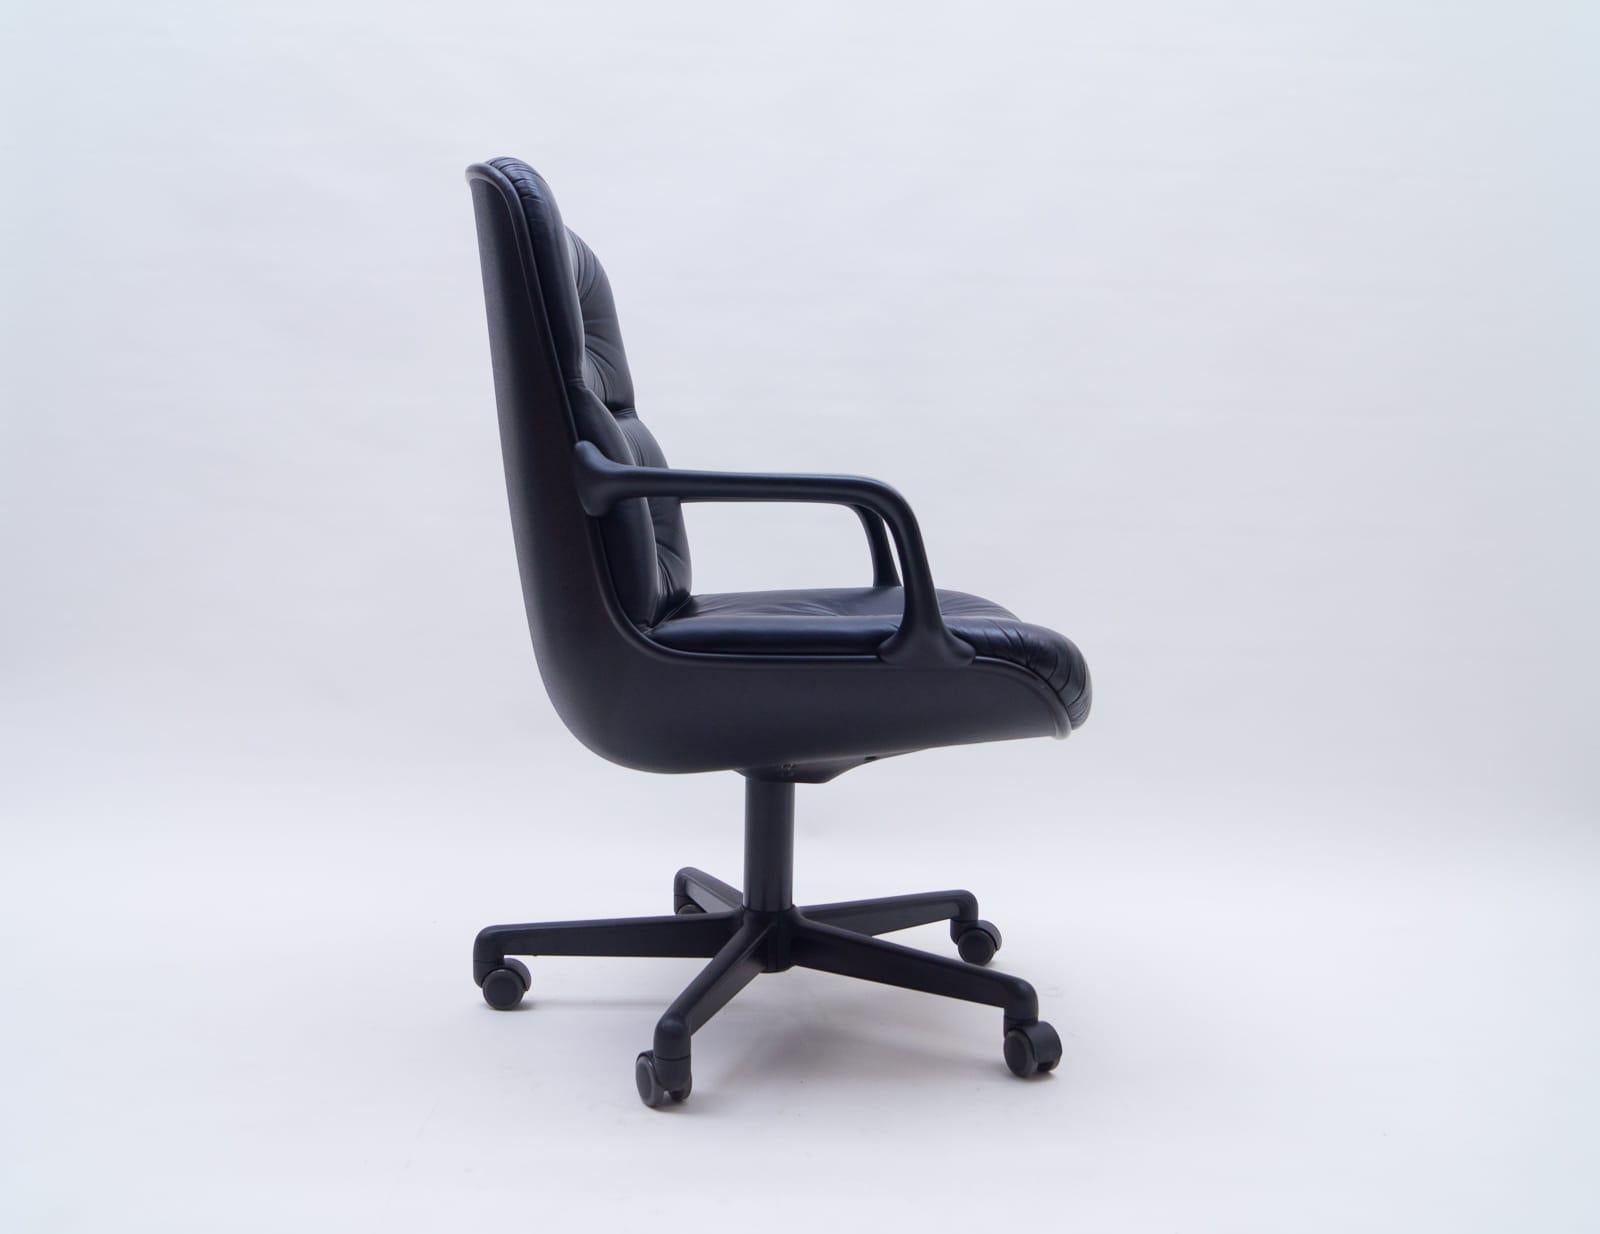 12 Stühle verfügbar.

Sehr bequeme und elegante Schreibtischstühle von Comforto. Entwurf von Charles Pollock. Der Klassiker schlechthin.

Maße: Sitzhöhe 46cm, Sitzbreite 58cm, Sitztiefe 51cm.

